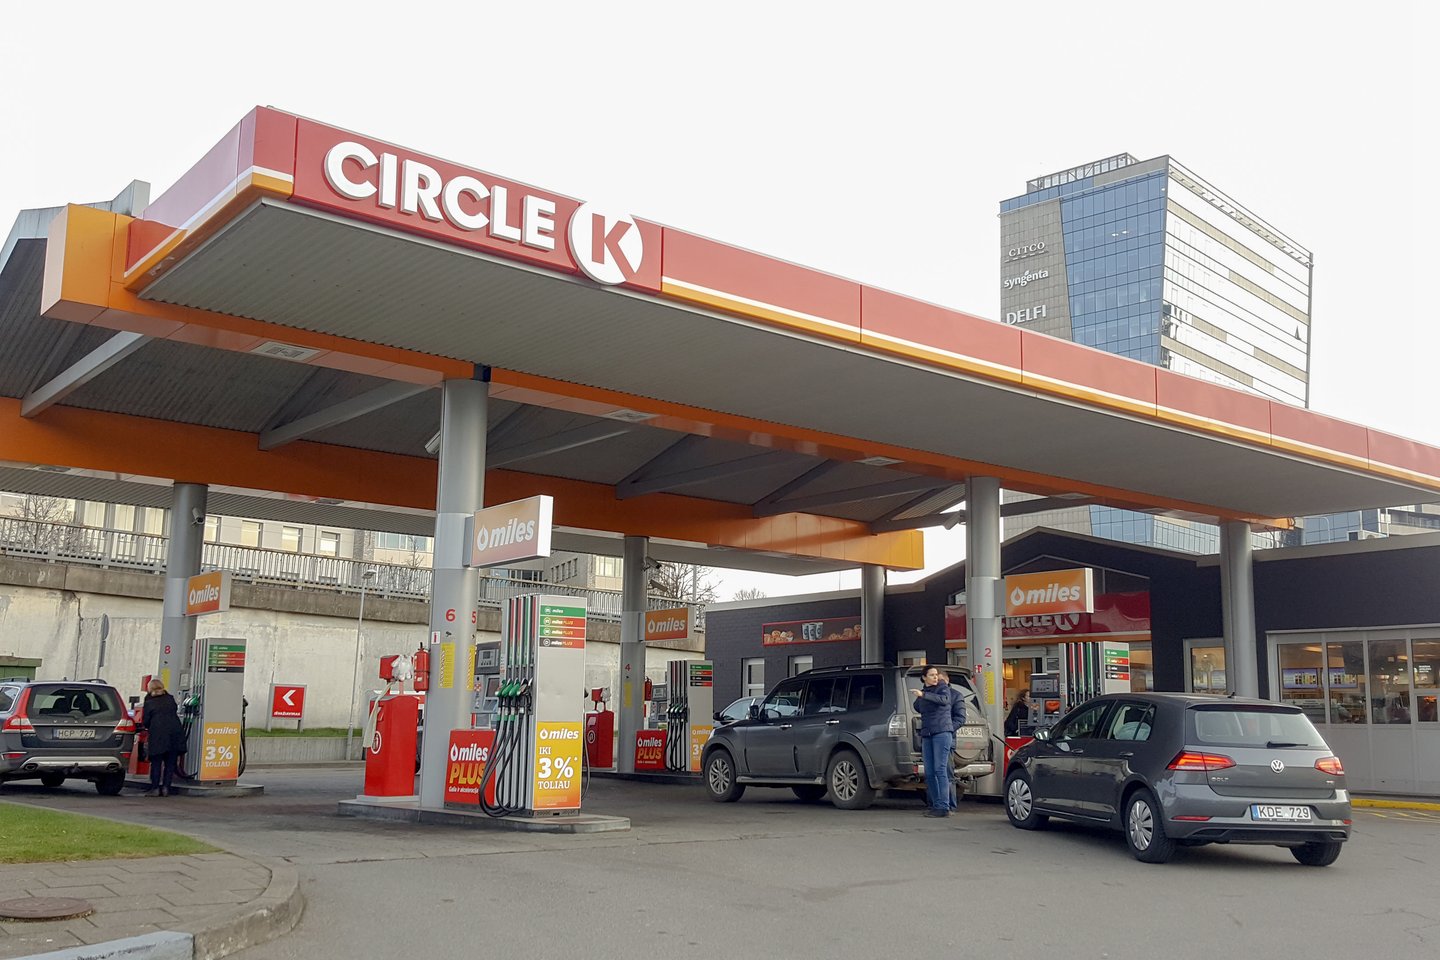 Tarptautinis degalinių tinklas „Circle K“ nutraukė veiklą Rusijoje.<br>D.Umbraso nuotr.